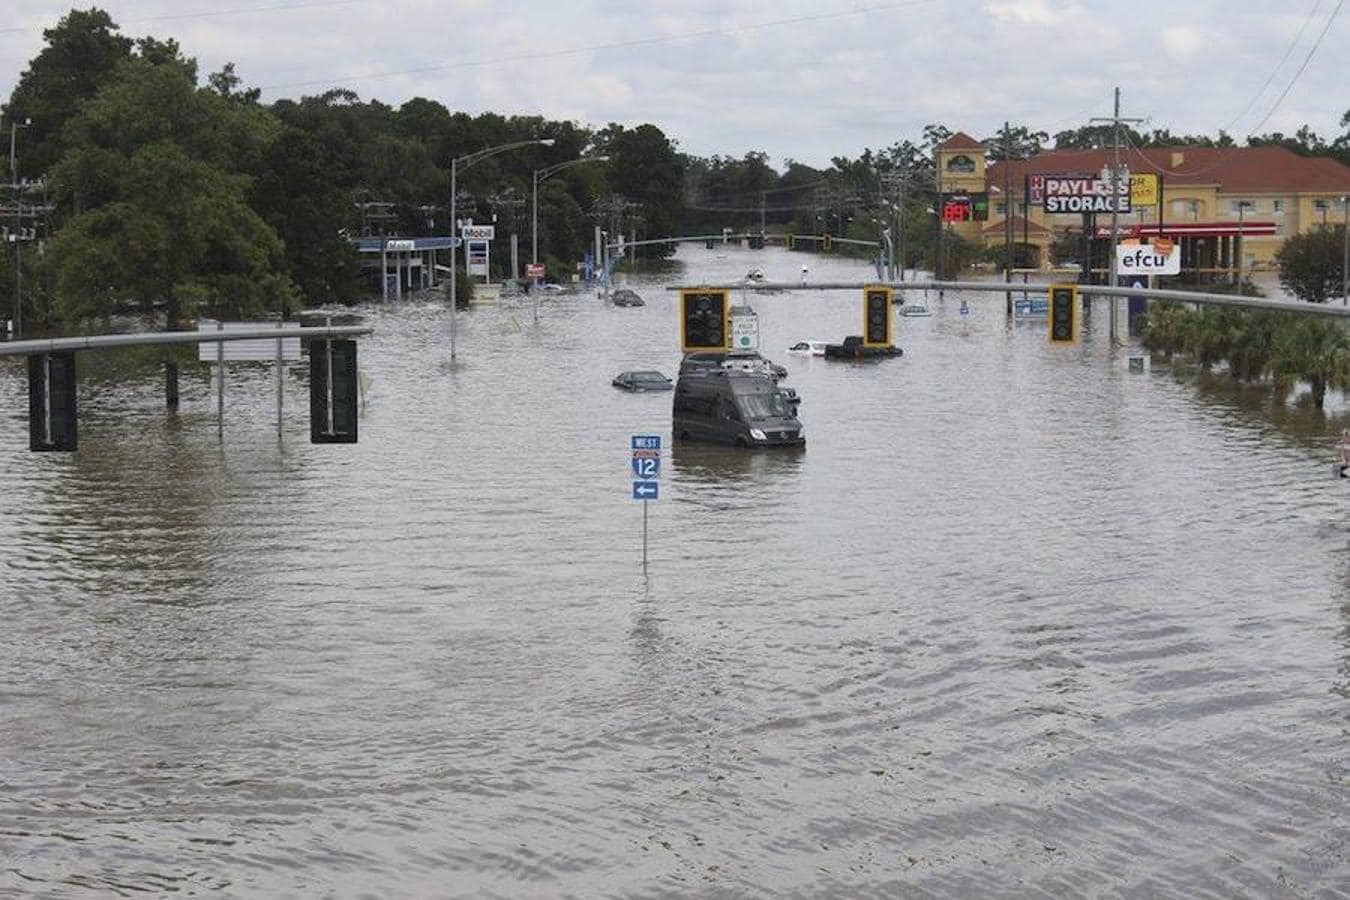 Vehículos prácticamente cubiertos por el agua que inunda las calles de Baton Rouge en Luisiana 